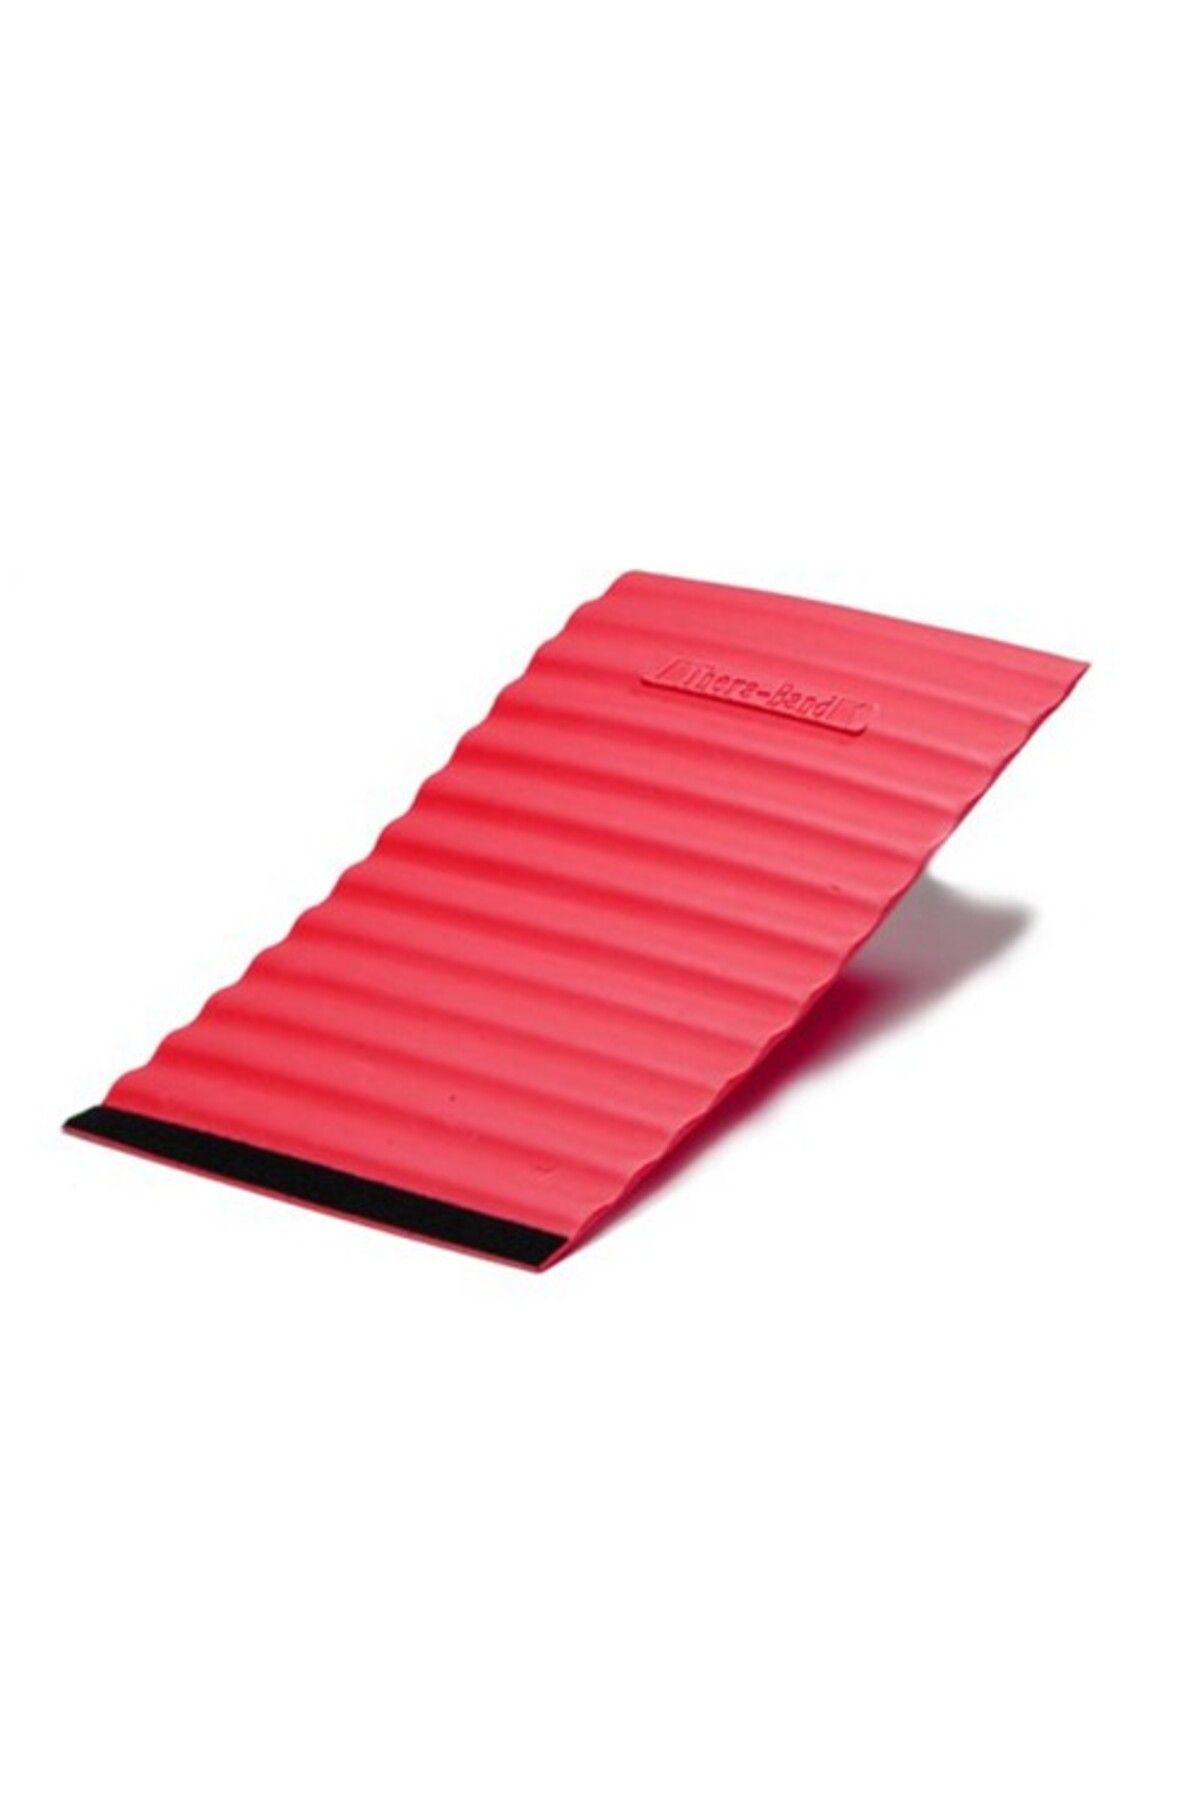 Theraband ® Pro Foam Rollers Wraps Soft Kırmızı